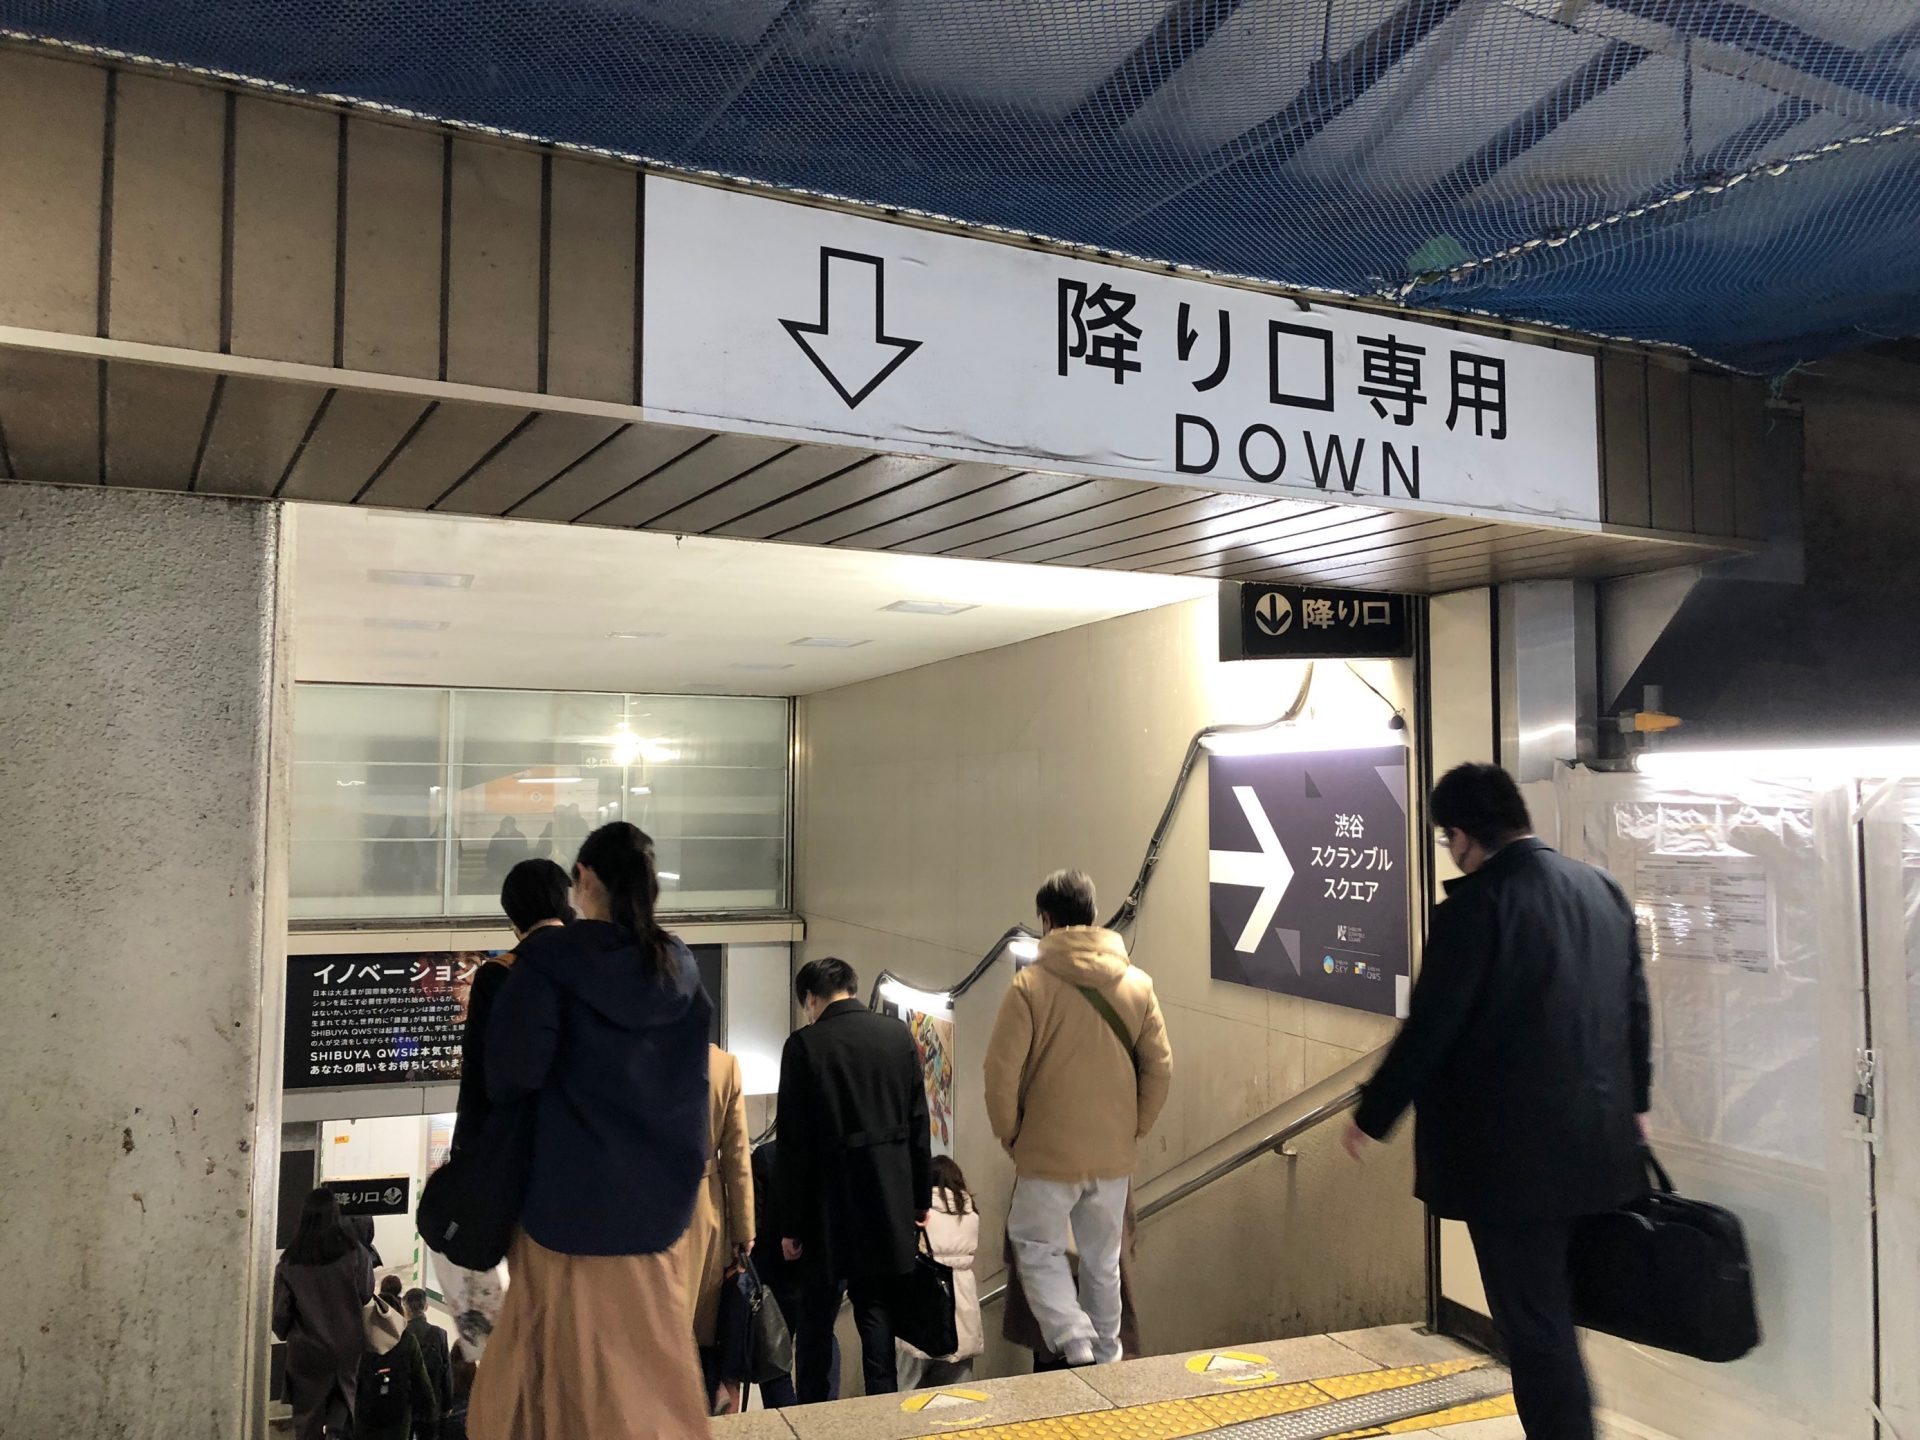 ビジネスエアポート渋谷フクラス 階段を下りて連絡通路を直進